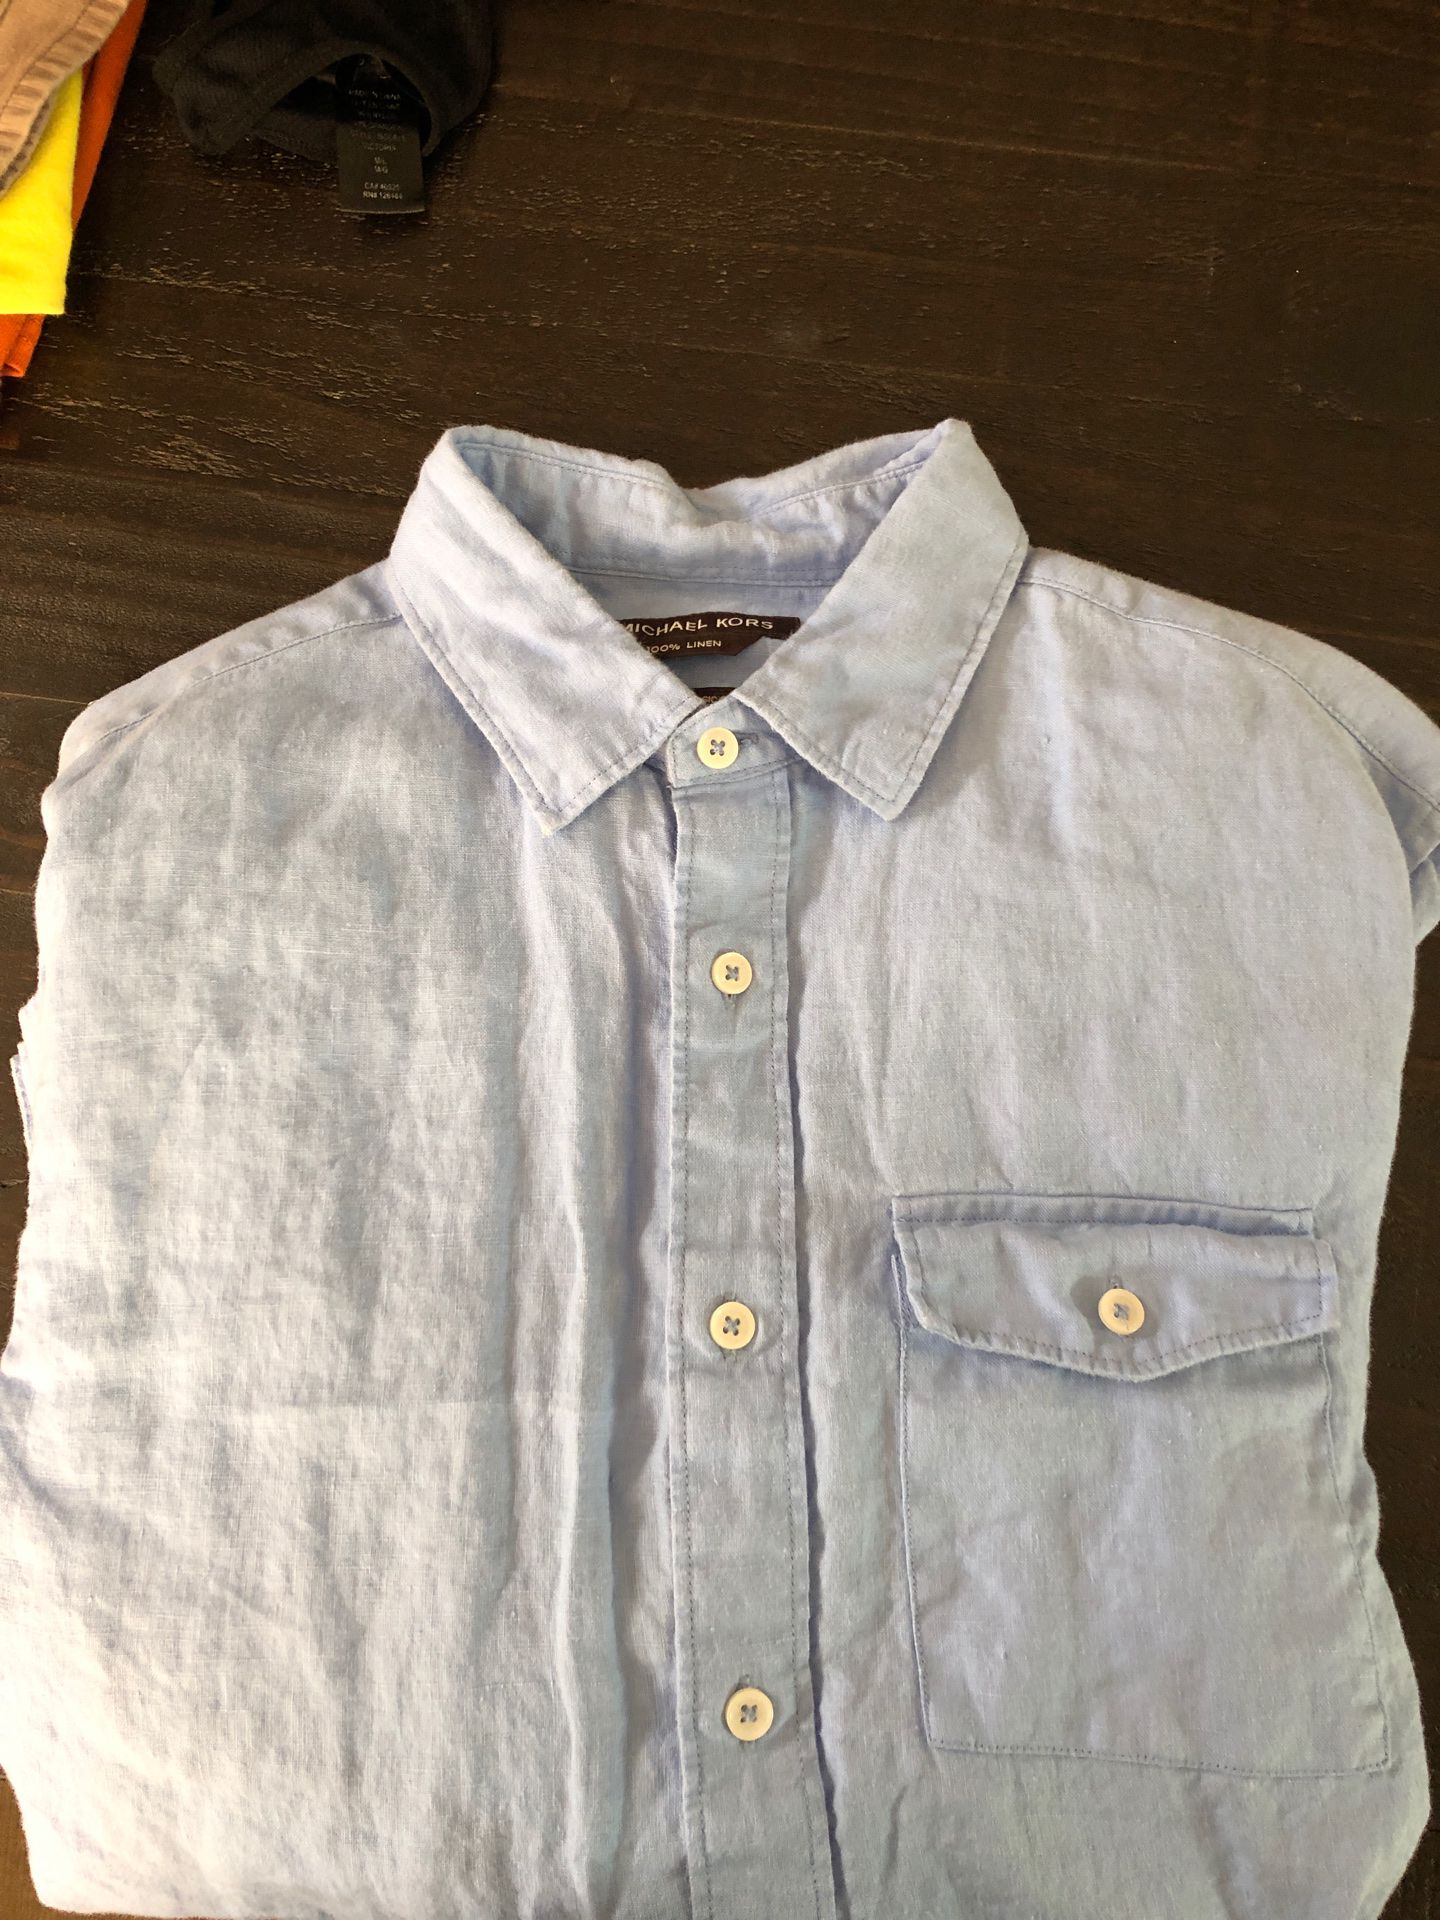 Man’s Michael Kors linen shirt brand new